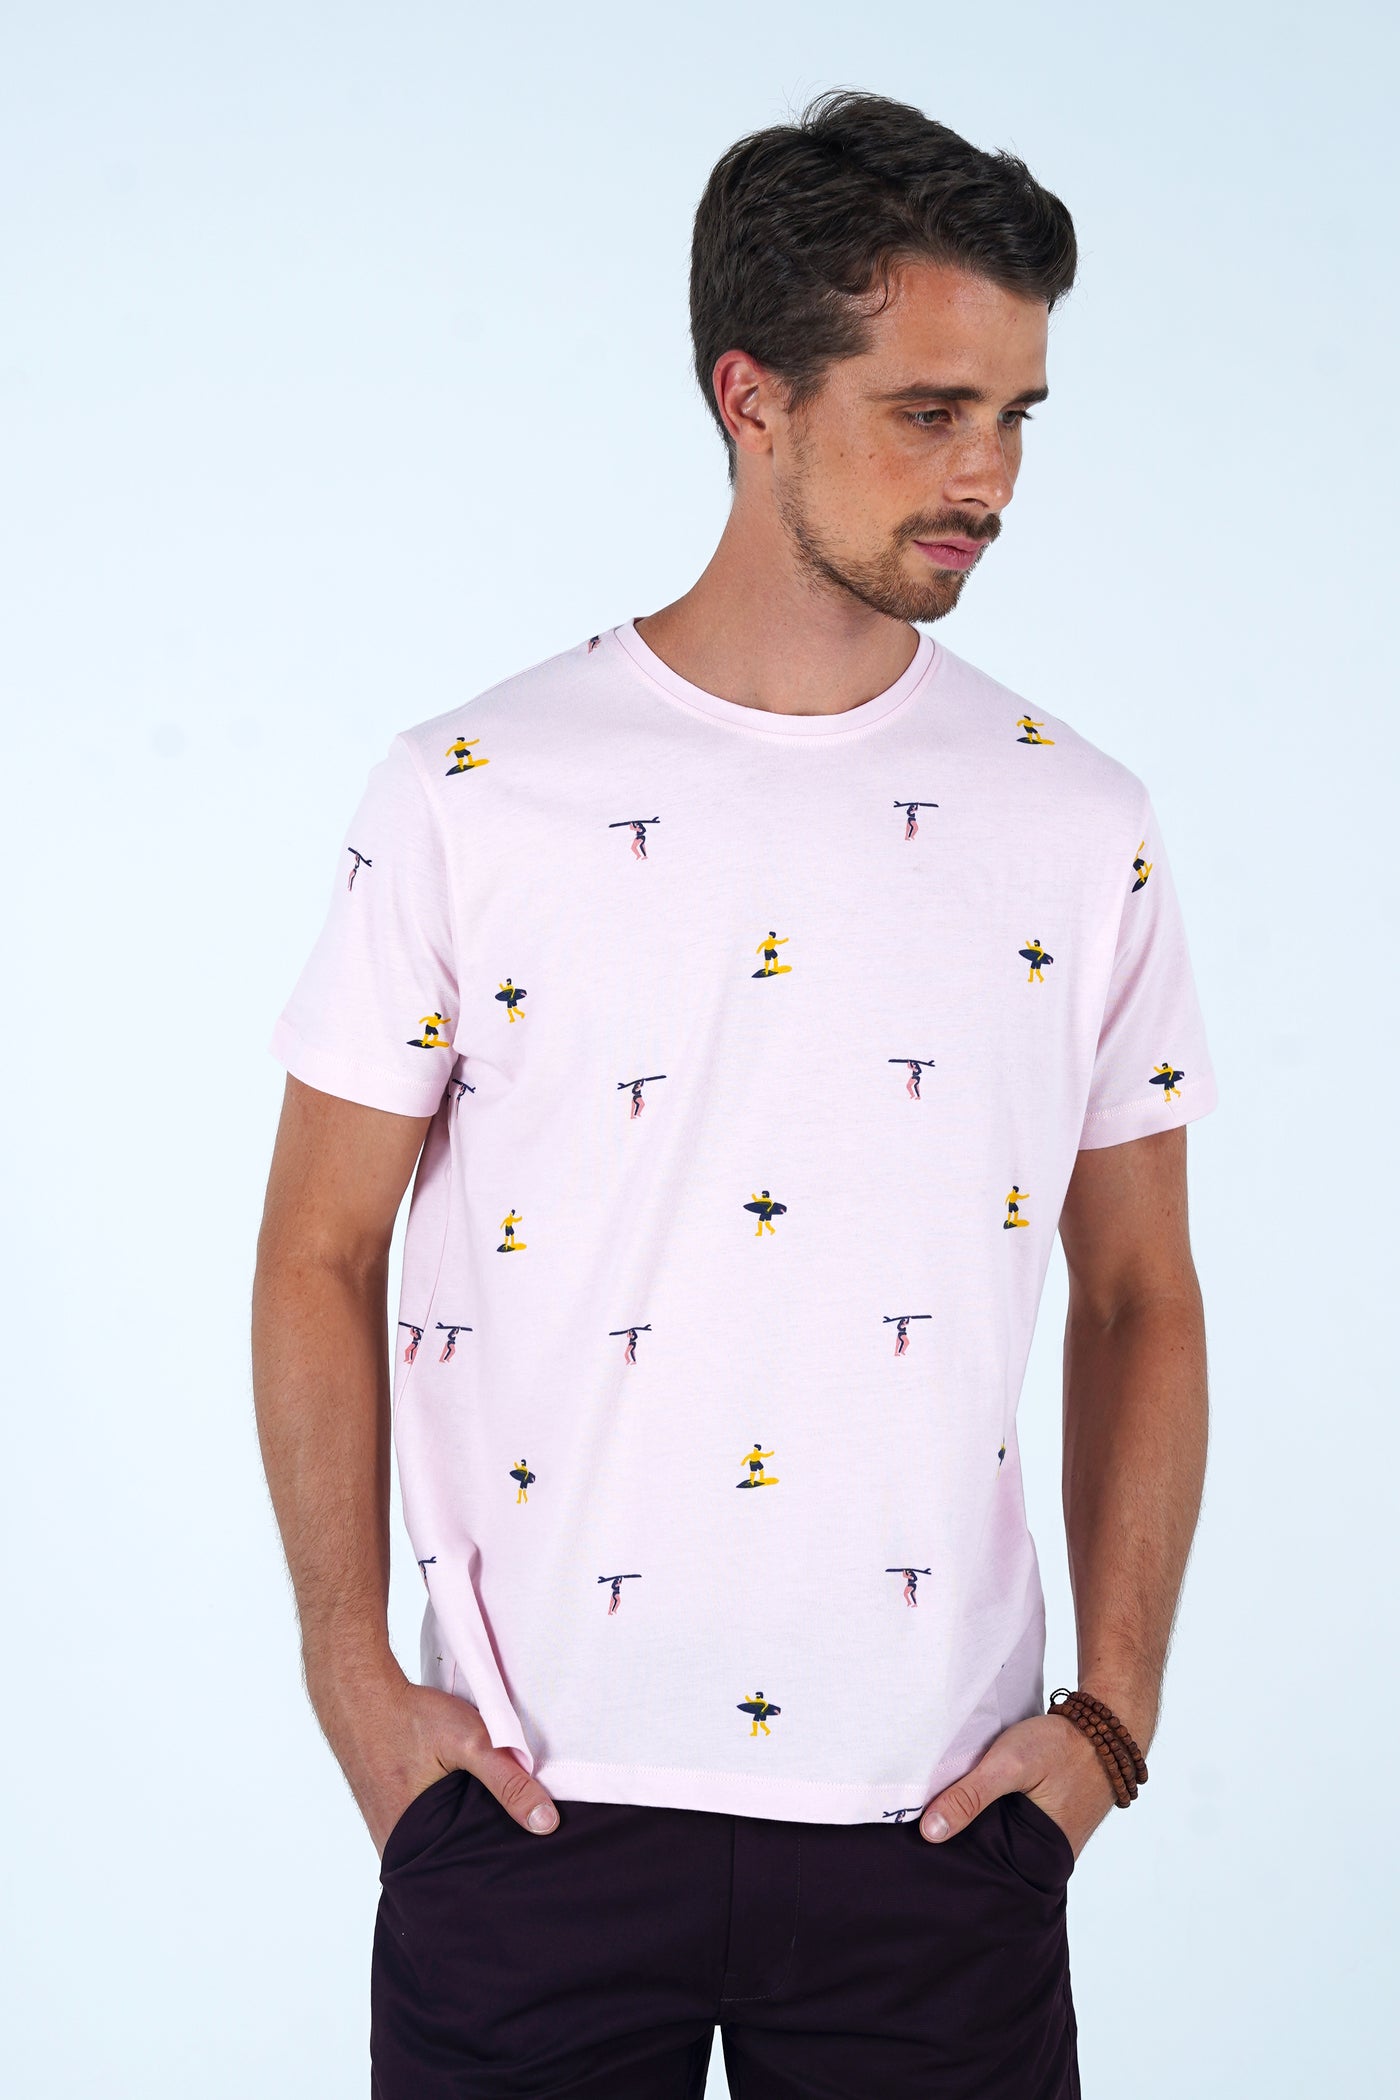 Erdbeer-Surfer-T-Shirt